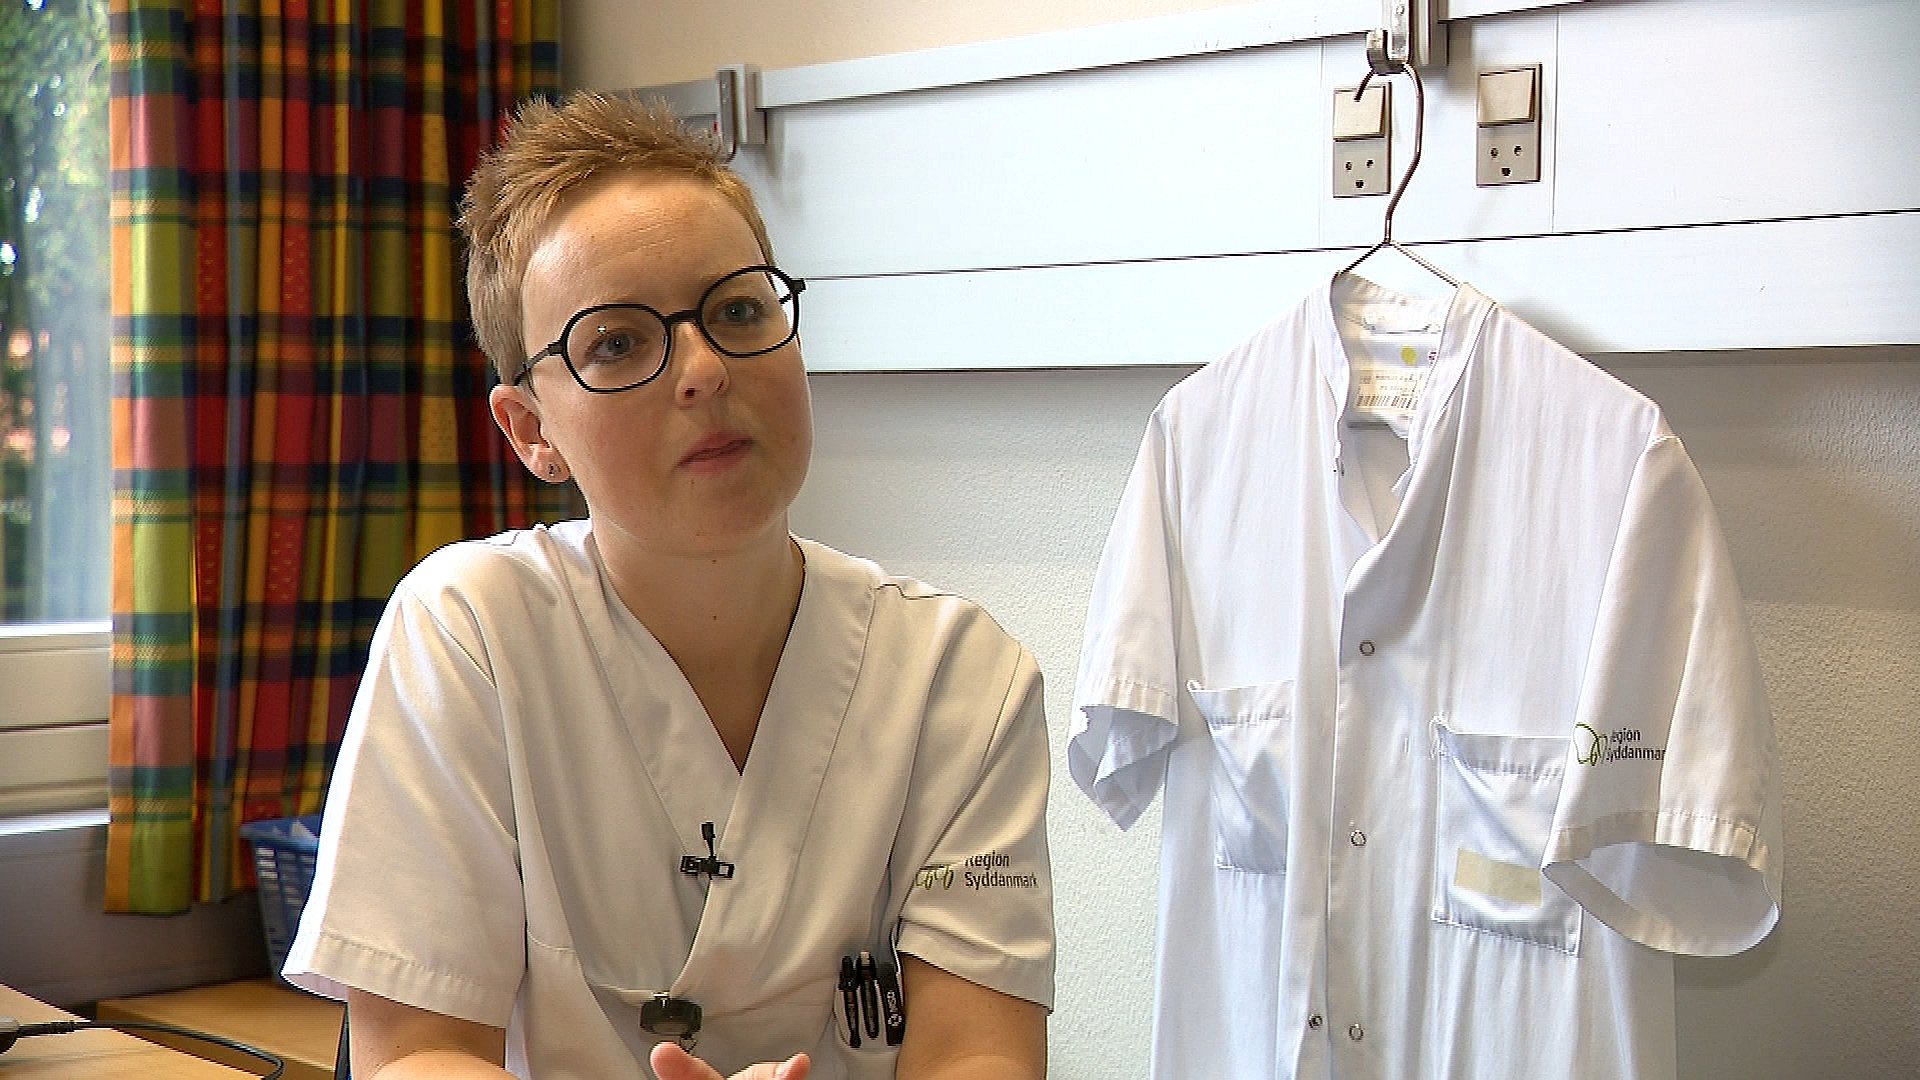 Fra hvid til blå - nu er sygeplejerskeuniformen længere gennemsigtig | TV SYD